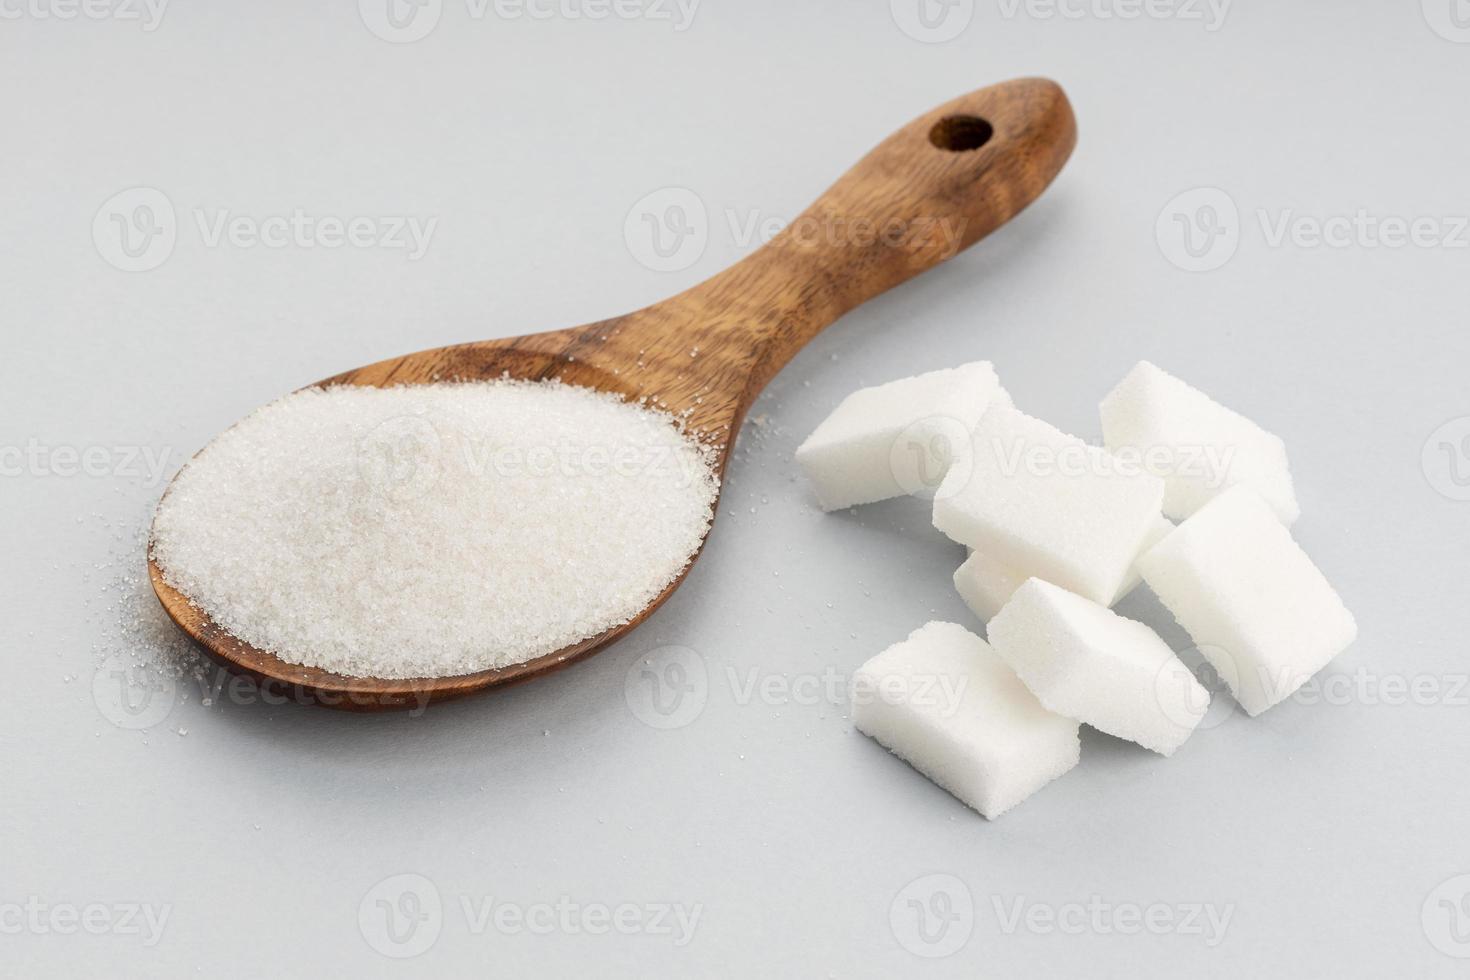 zucchero in cucchiaio di legno e cubetti di zucchero su sfondo grigio. avvicinamento foto